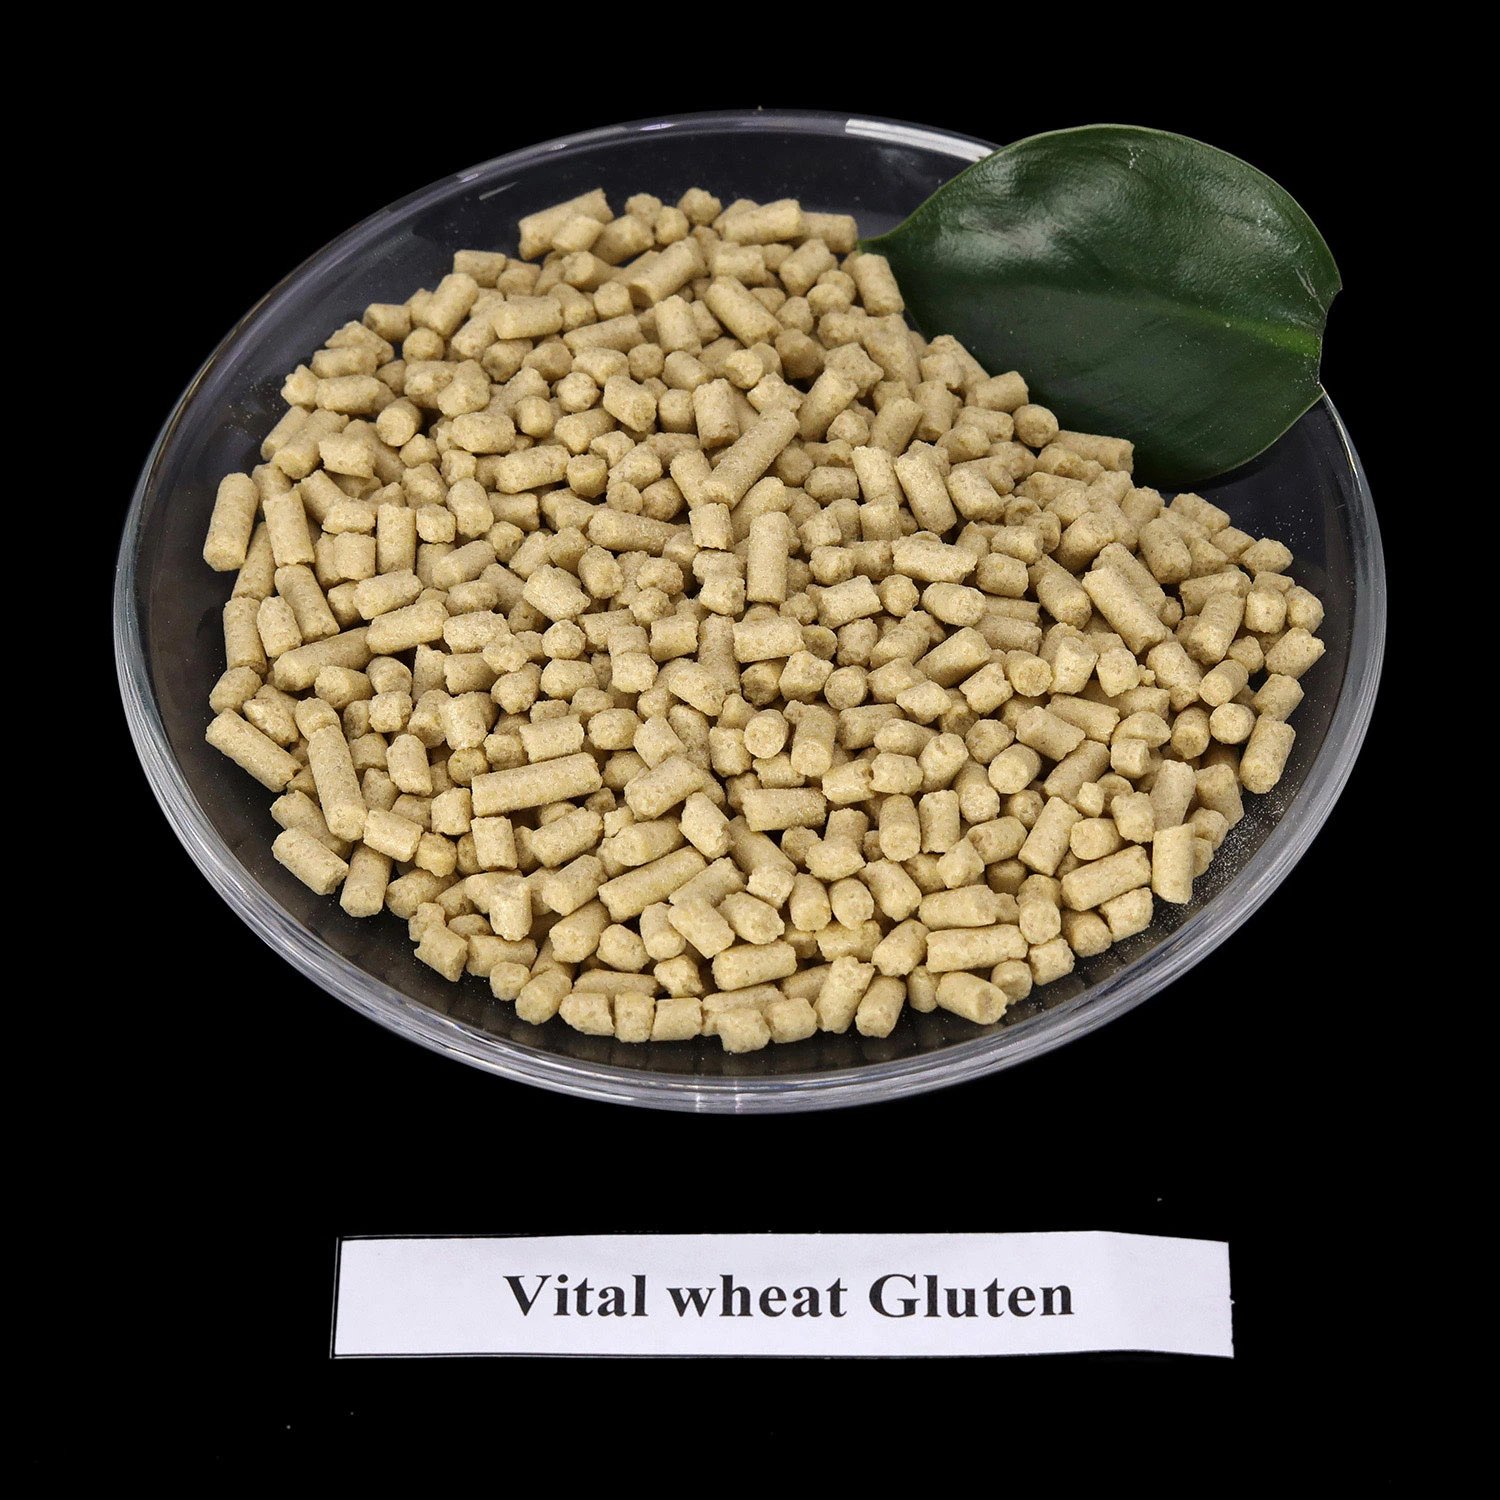 Жизненно важное значение пшеничной клейковины для животных продовольственной